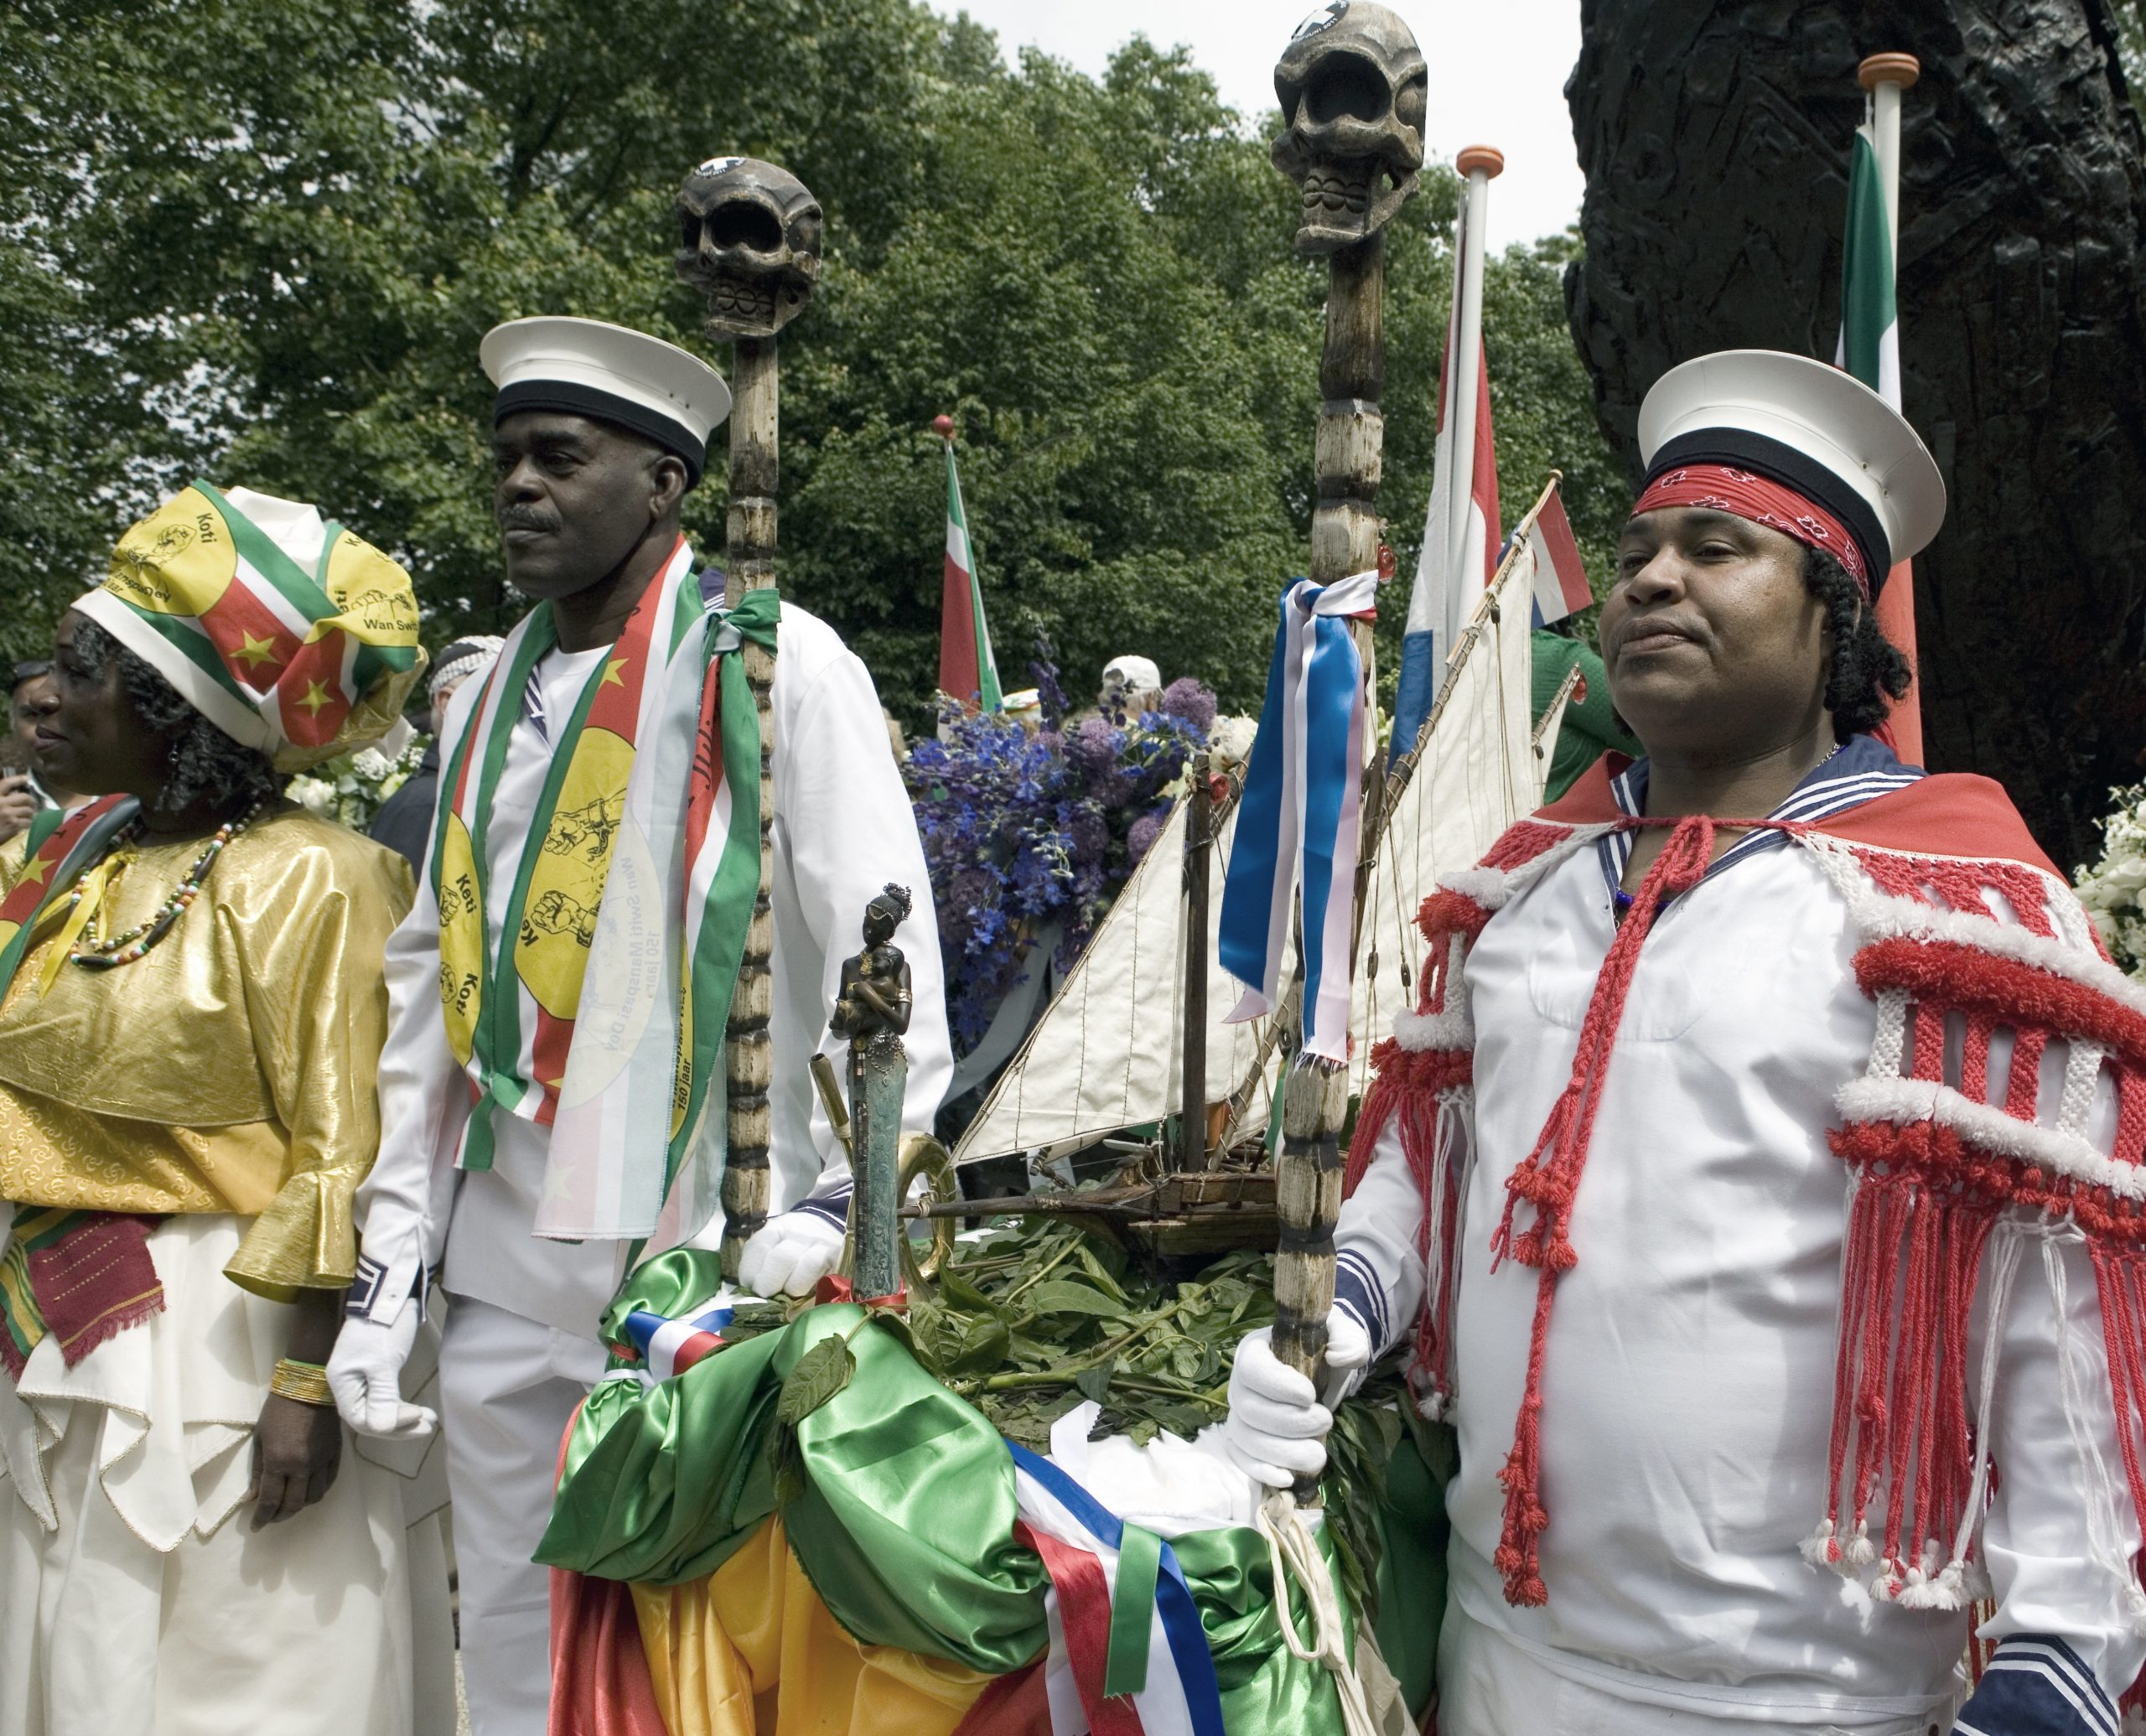 Groepsportret van mannen in traditionele kledij die een schip model dragen bij het nationaal monument slavernijverleden in het Oosterpark op 1 juli 2013. Bron: Stadsarchief Amsterdam, CCO, vervaardiger Ton van Rijn.